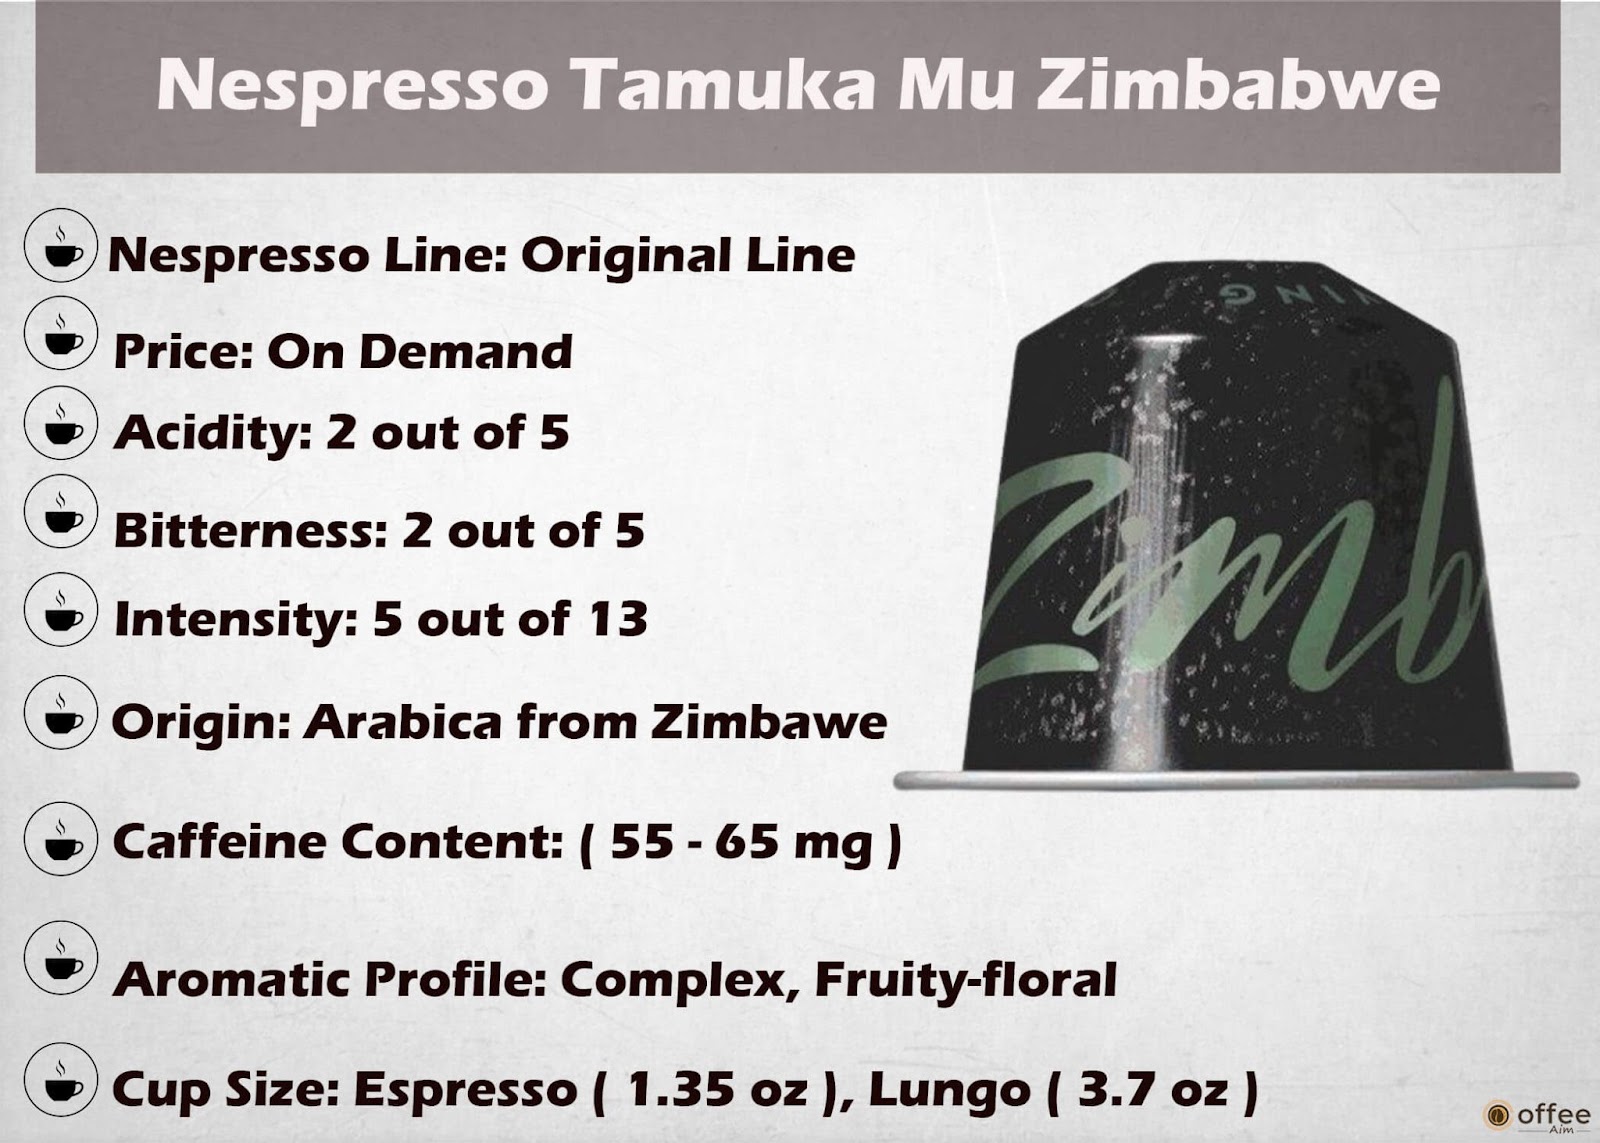 Features Chart of Nespresso Tamuka Mu Zimbabwe Original Line Capsule.